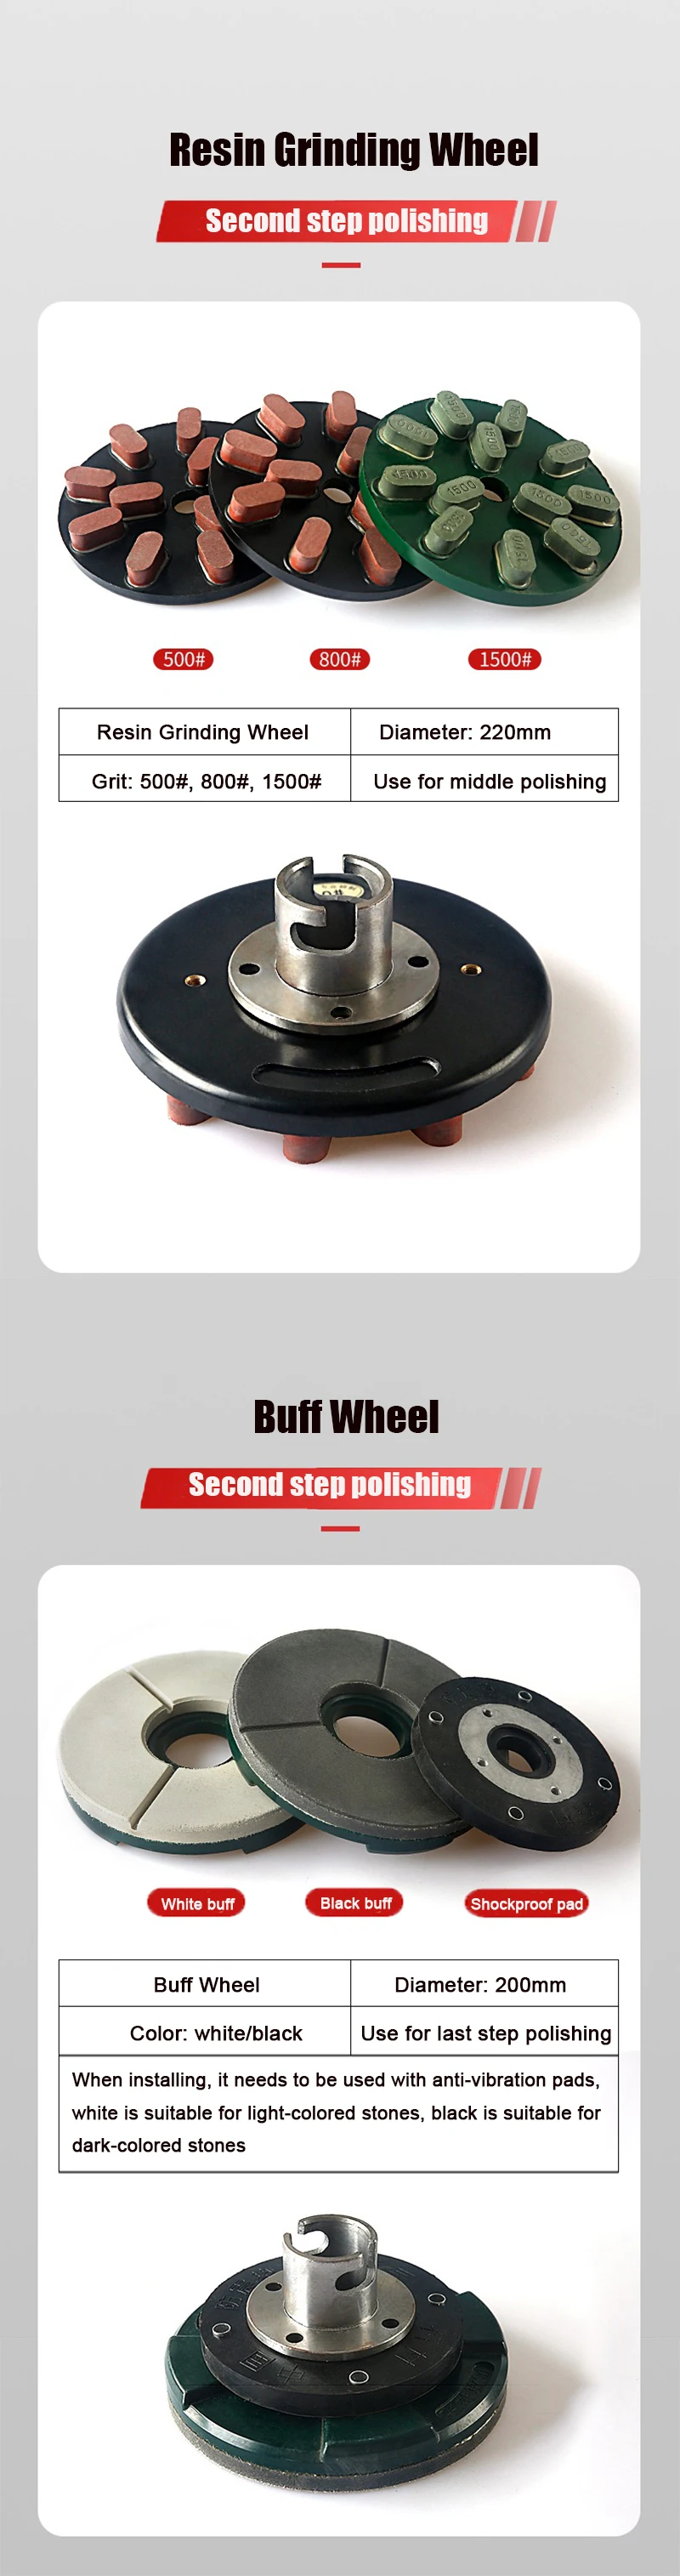 Grinding wheel 7&8.jpg